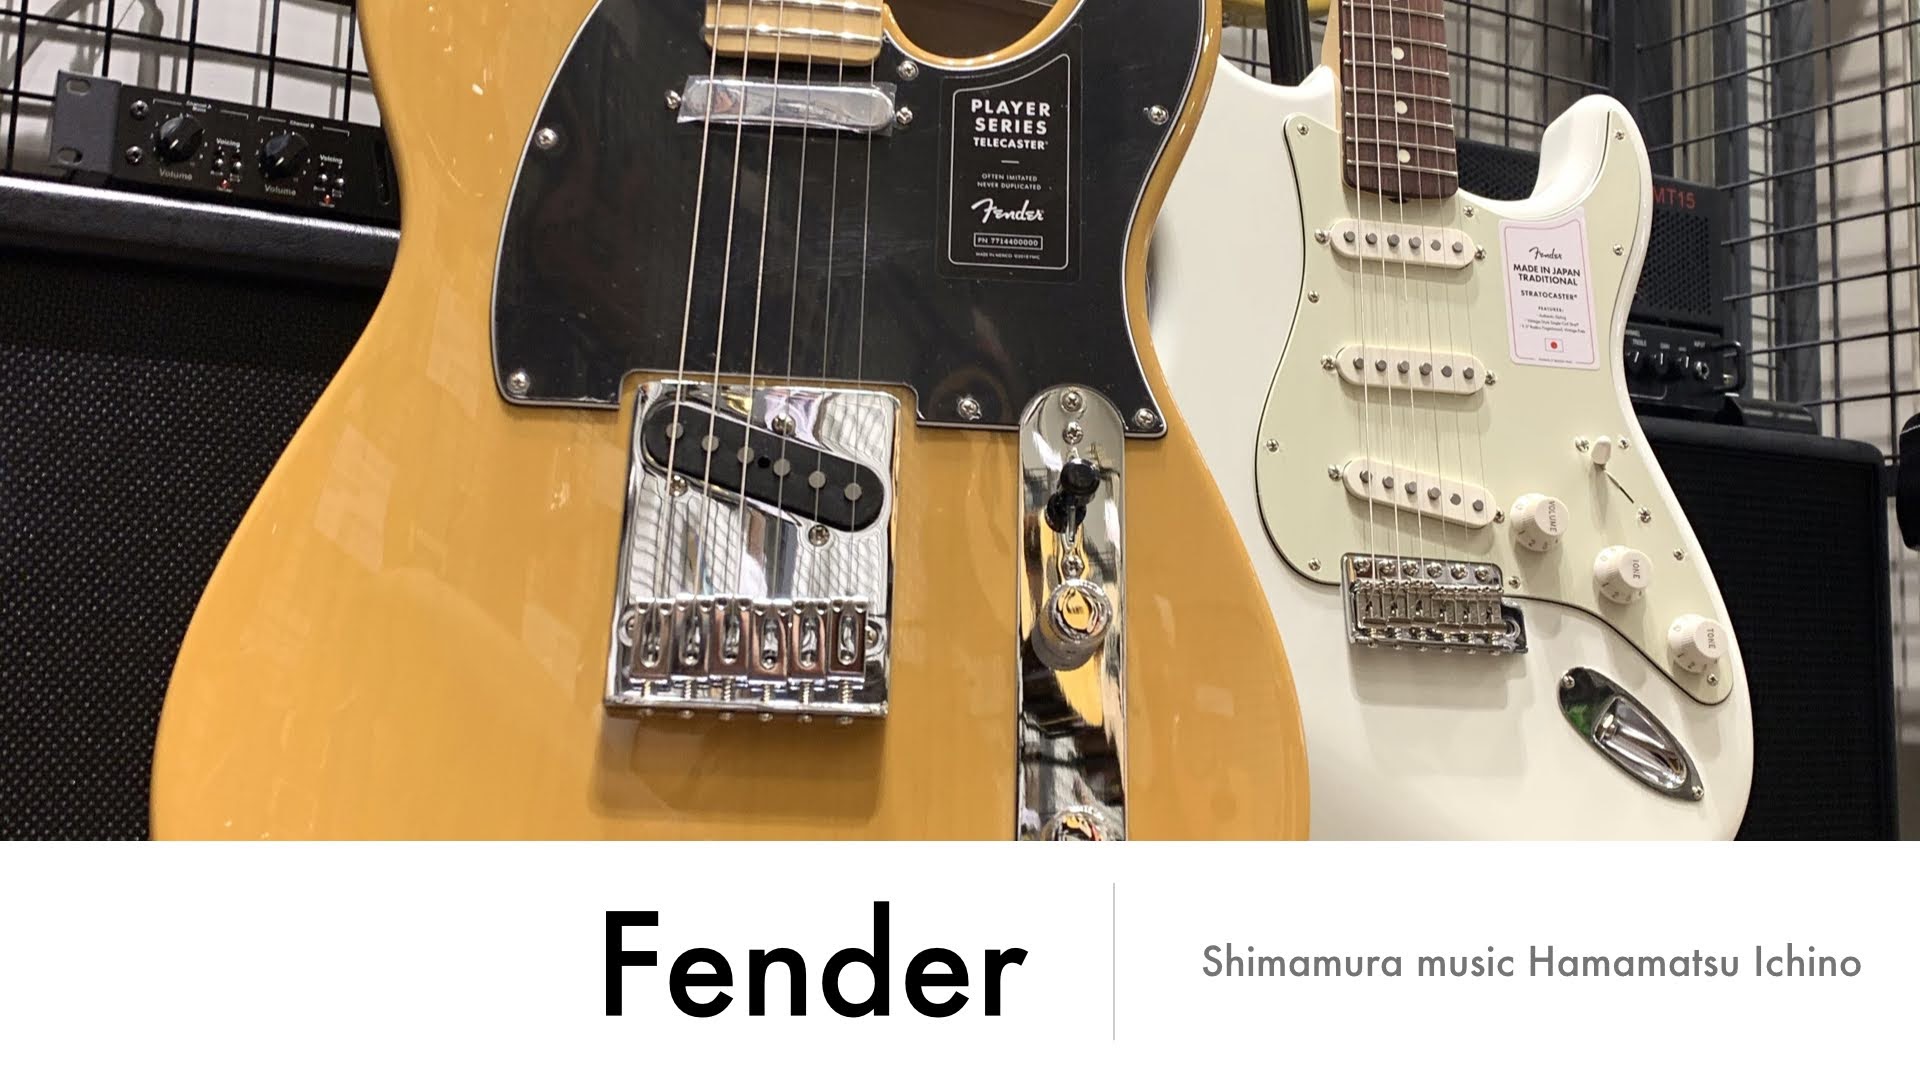 *【新入荷】Fenderのギター紹介！ 島村楽器浜松市野店のHPをご覧のみなさん、こんにちは。 今回は前回に続いて入荷いたしました、Fenderのギターを紹介していきます。 **PLAYER TELE MN ***特徴 大胆かつ革新的で、無骨なPlayer Telecasterは、ピュアなフェンダー […]